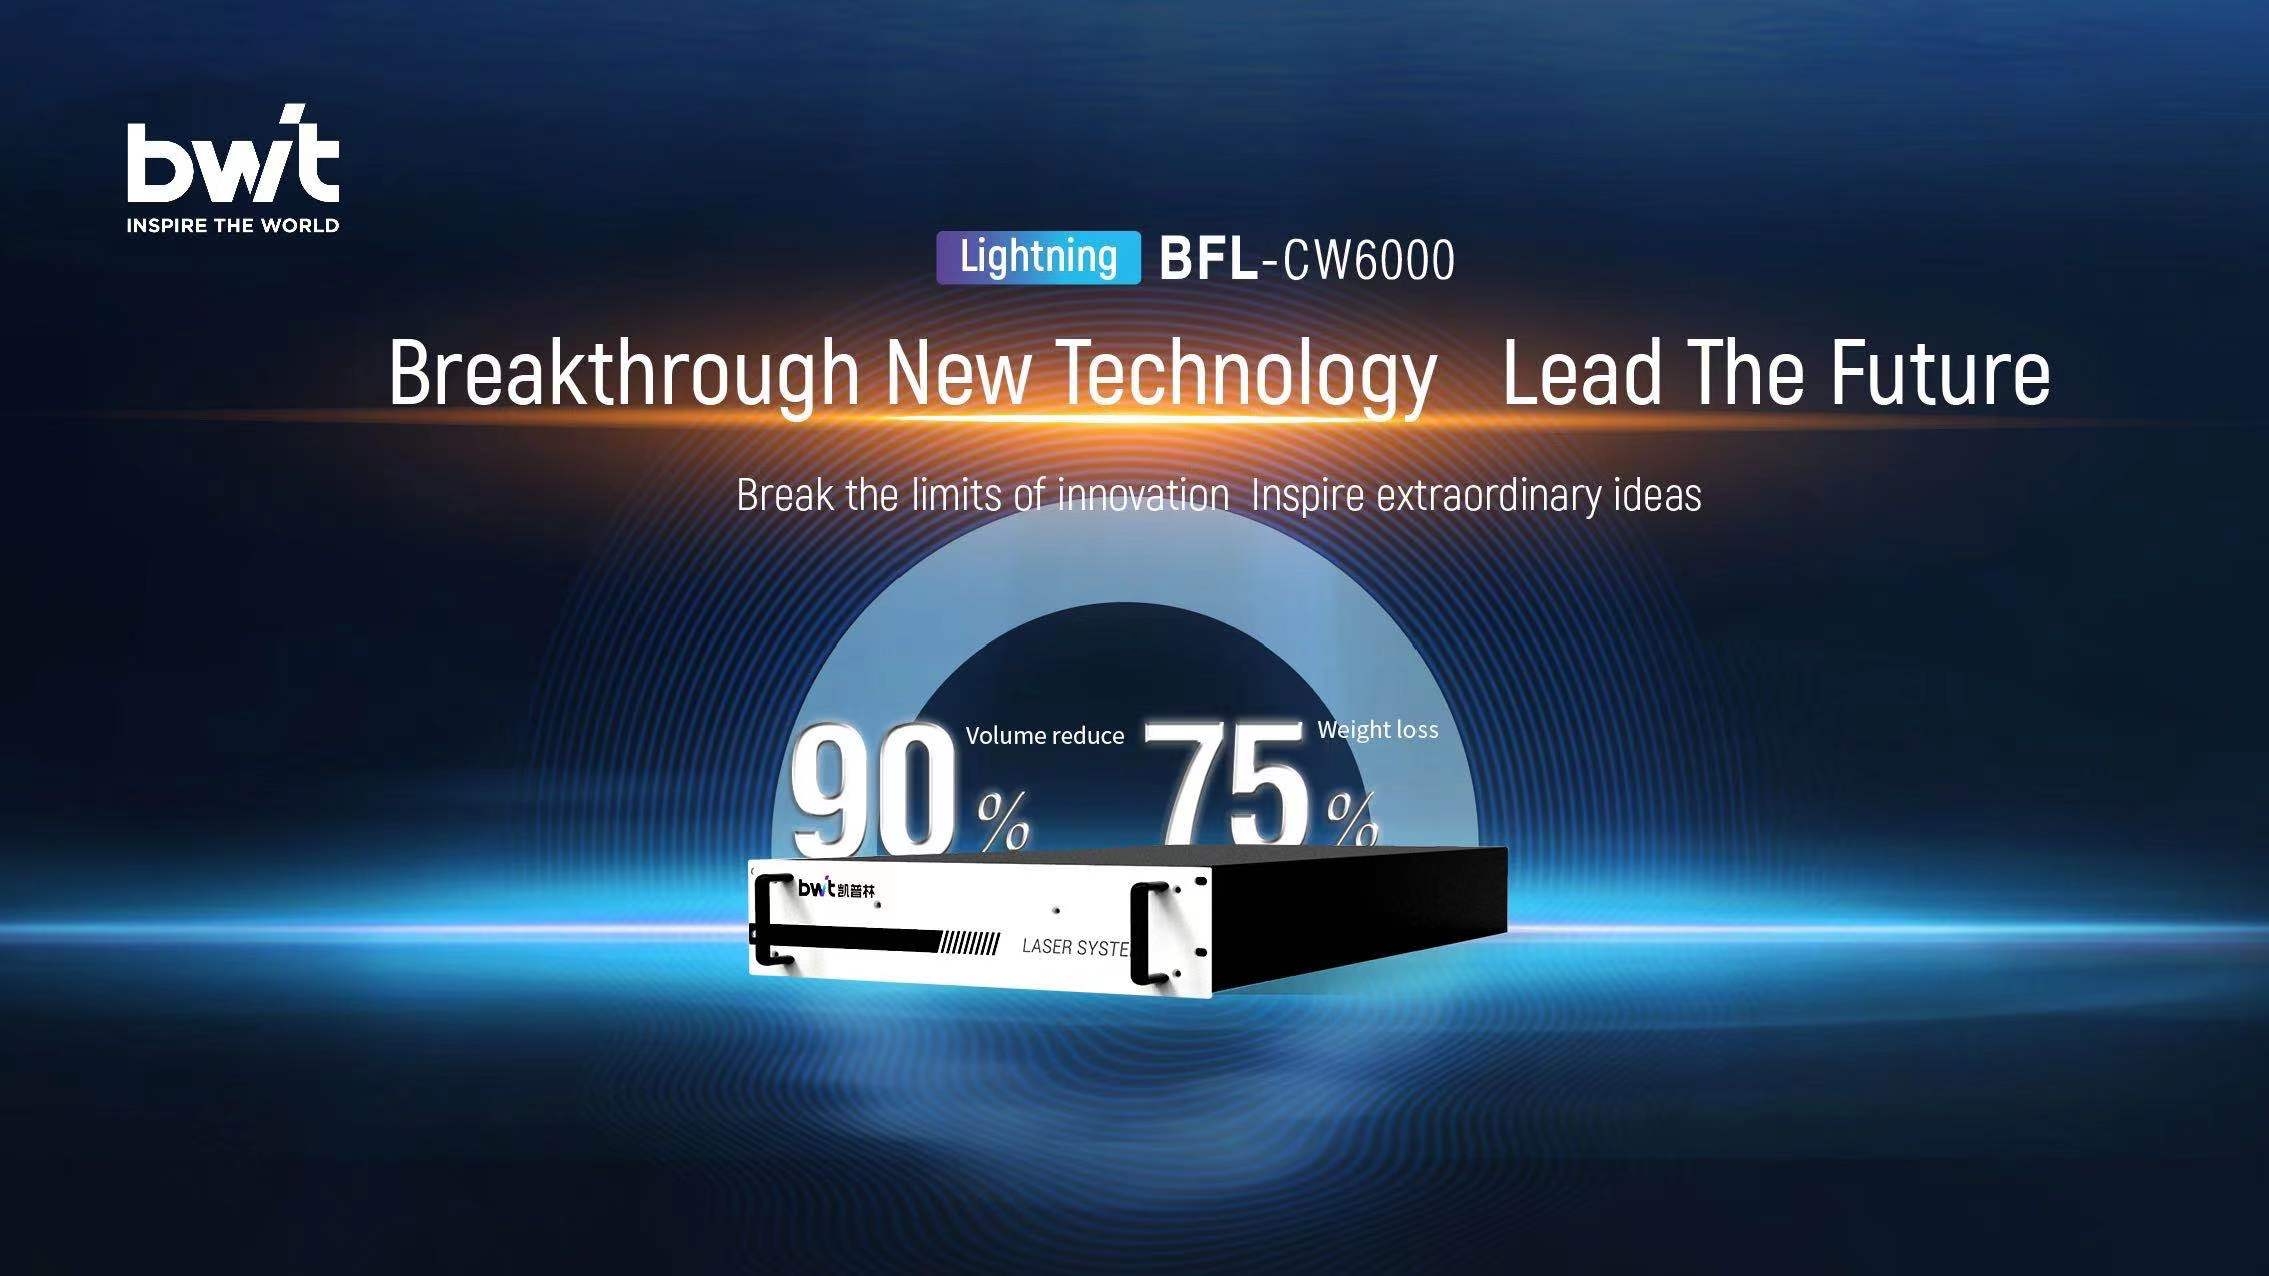 BWT launches Lightning 6000W fiber laser | Smaller, lighter and smarter